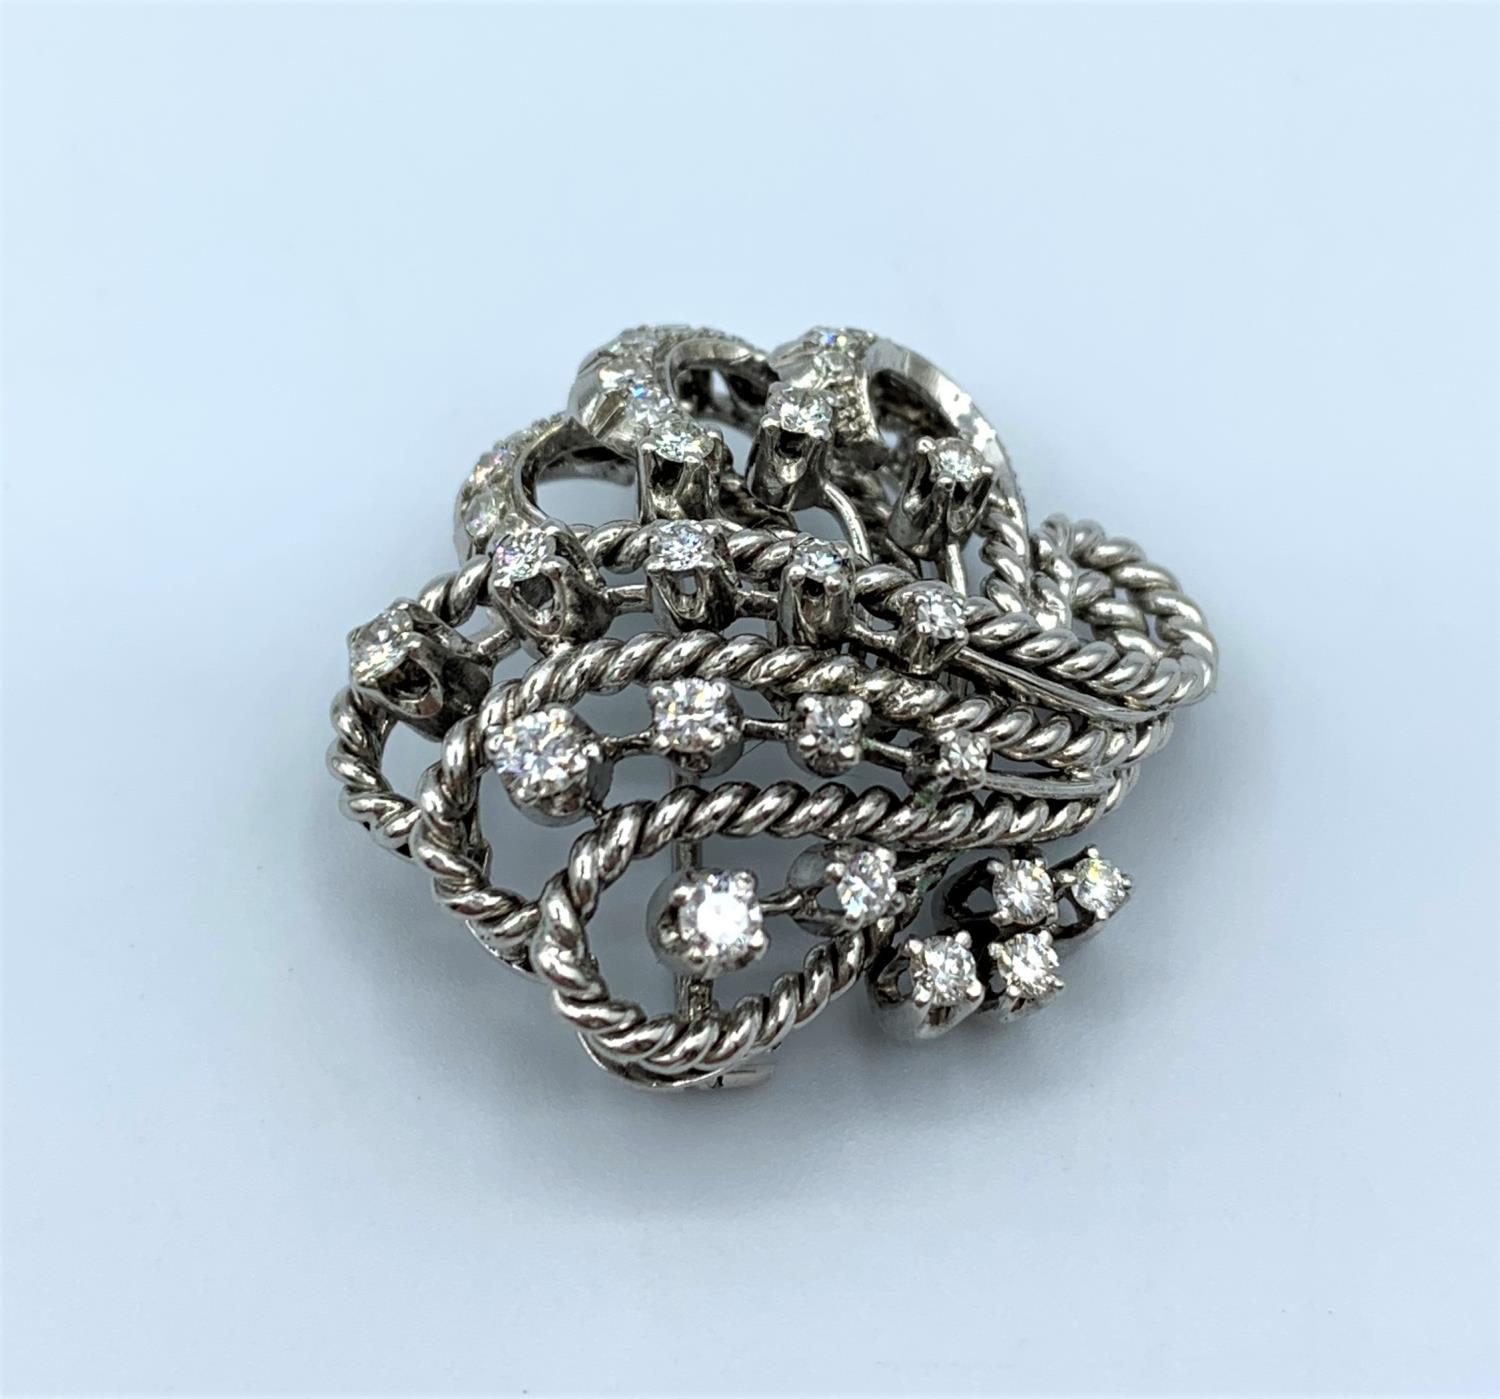 Platinum and diamond brooch, weight 12.6g - Image 4 of 14